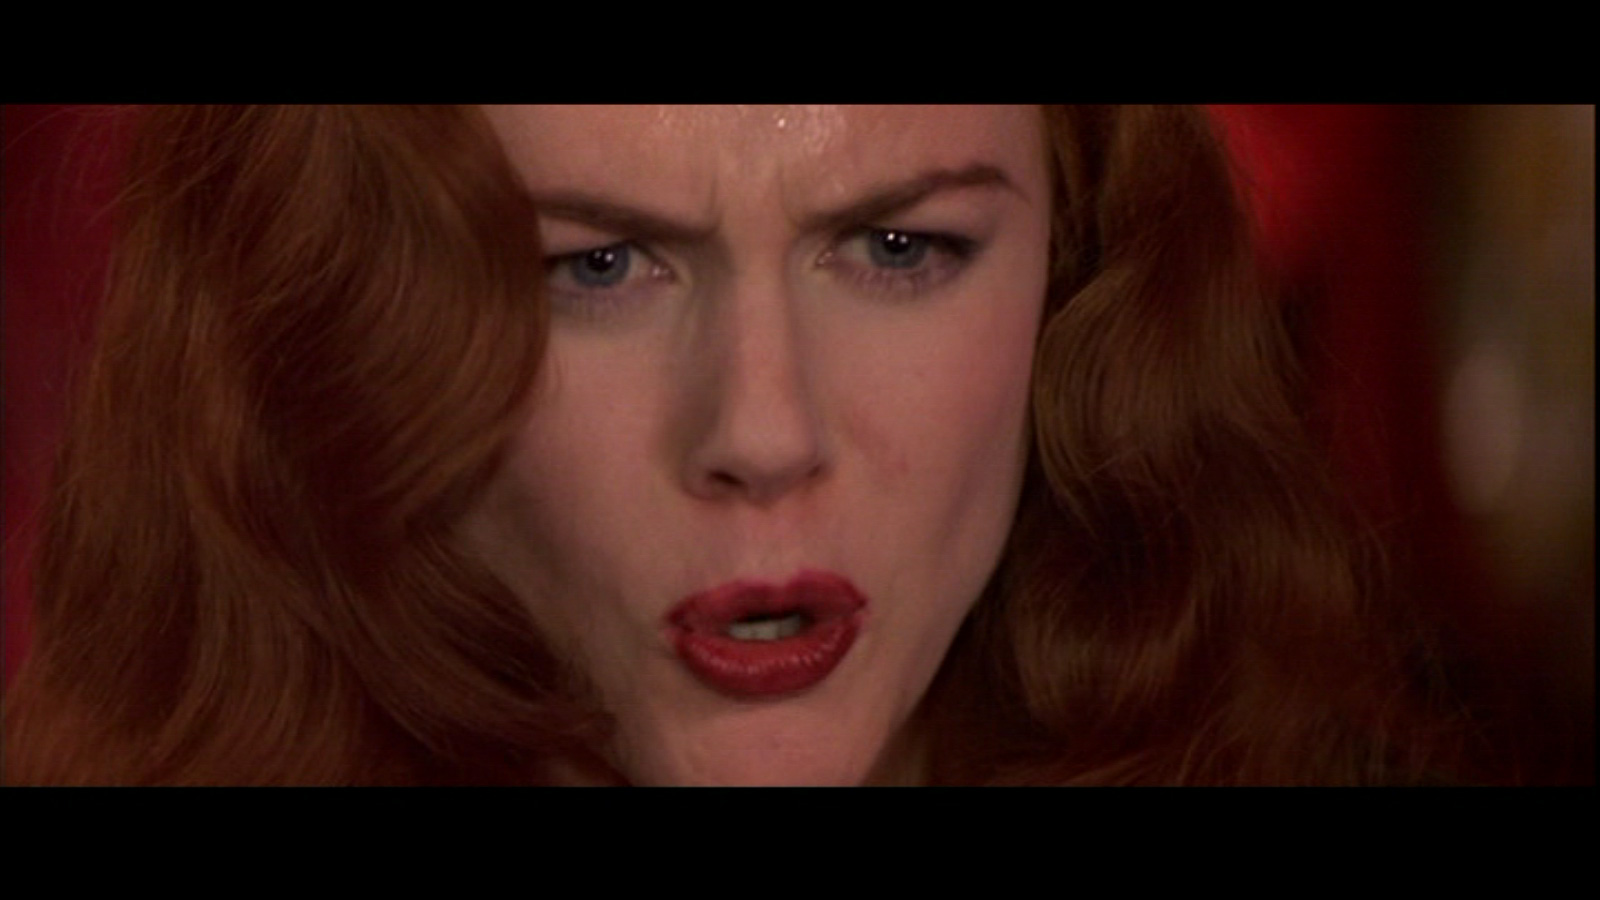 Moulin Rouge - Nicole Kidman Image (23851101) - Fanpop